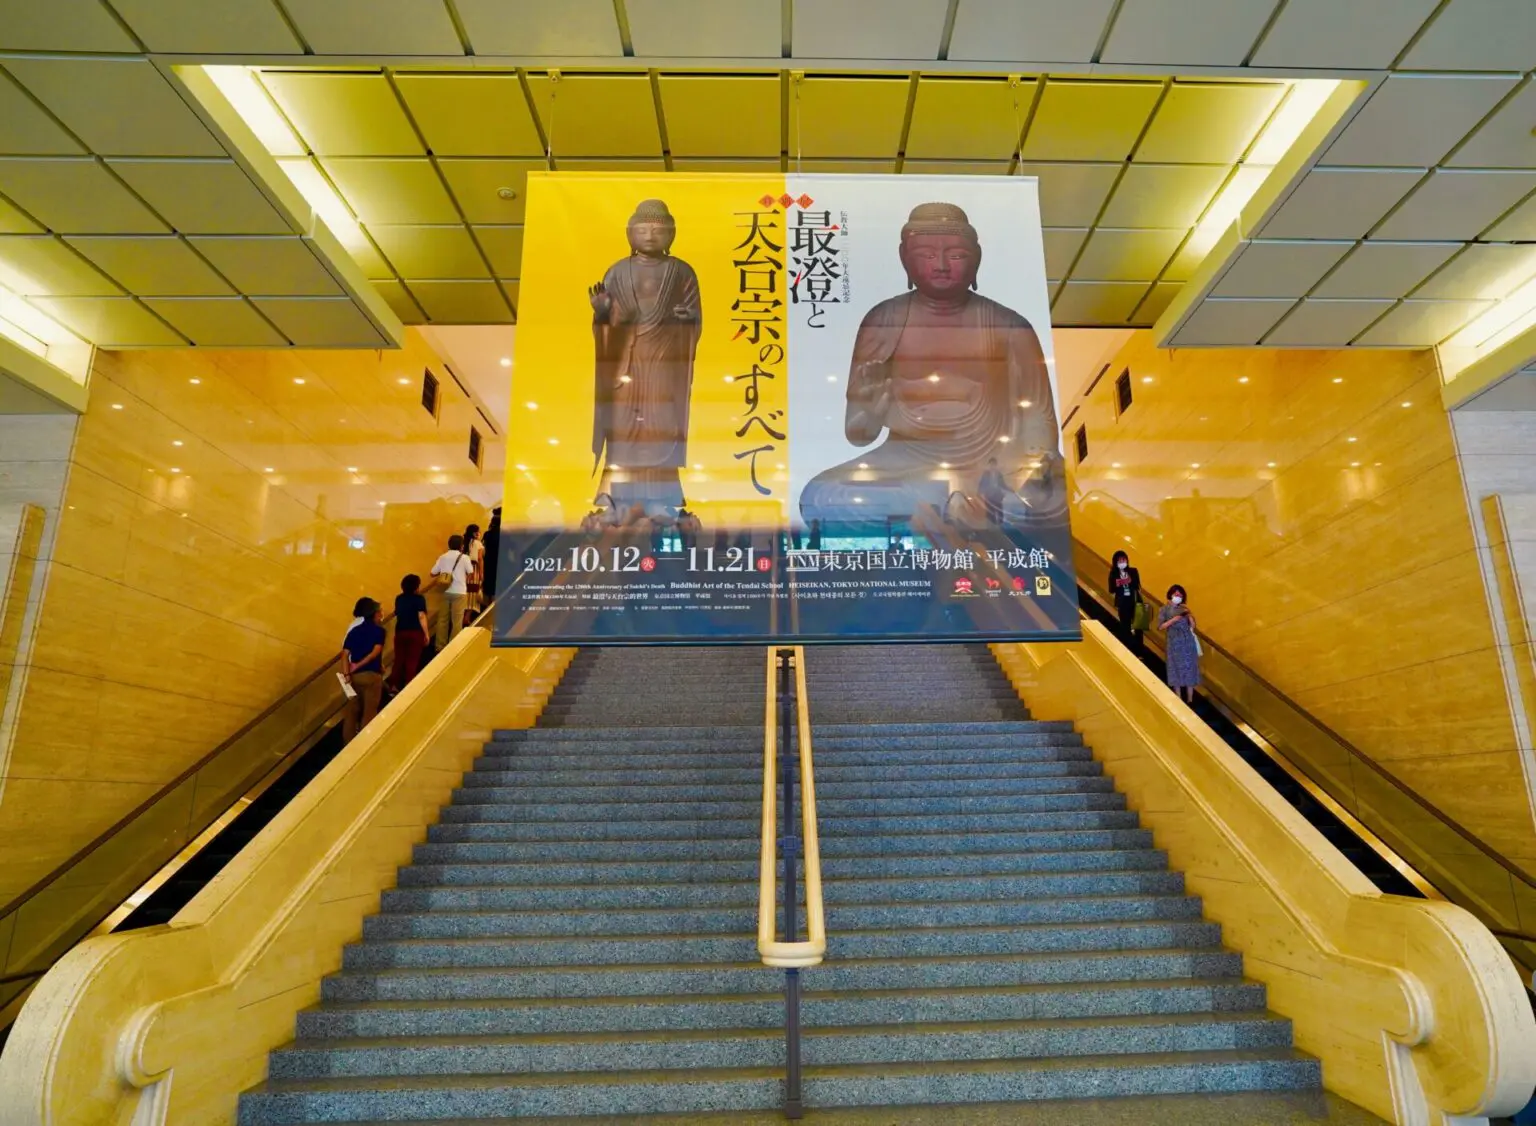 【寺社Now】天から金言が舞い降りる!? 東京国立博物館特別展｢最澄と天台宗のすべて｣に仕掛けられた5つのメッセージ